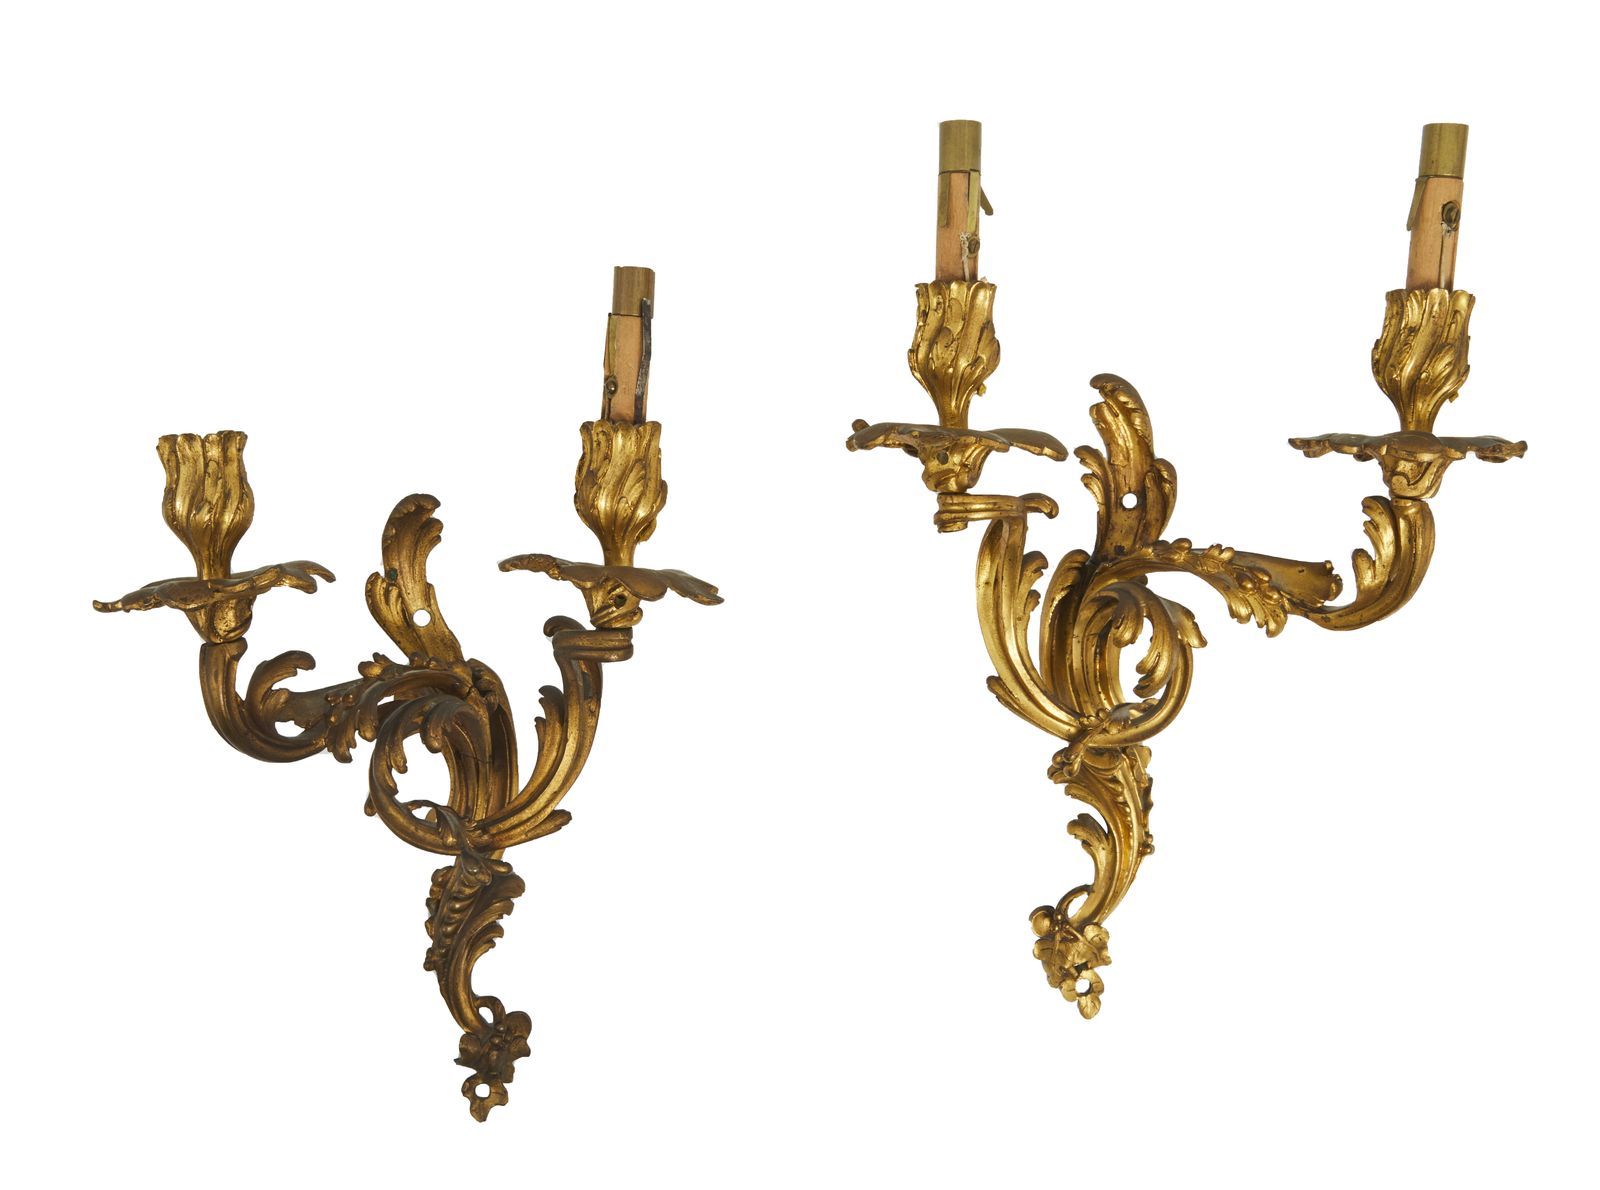 Null 111-一对带凹槽和鎏金的双臂青铜壁炉。

路易十五时期

(用电孔)

要与卡菲利的作品相比。

32 x 33 cm